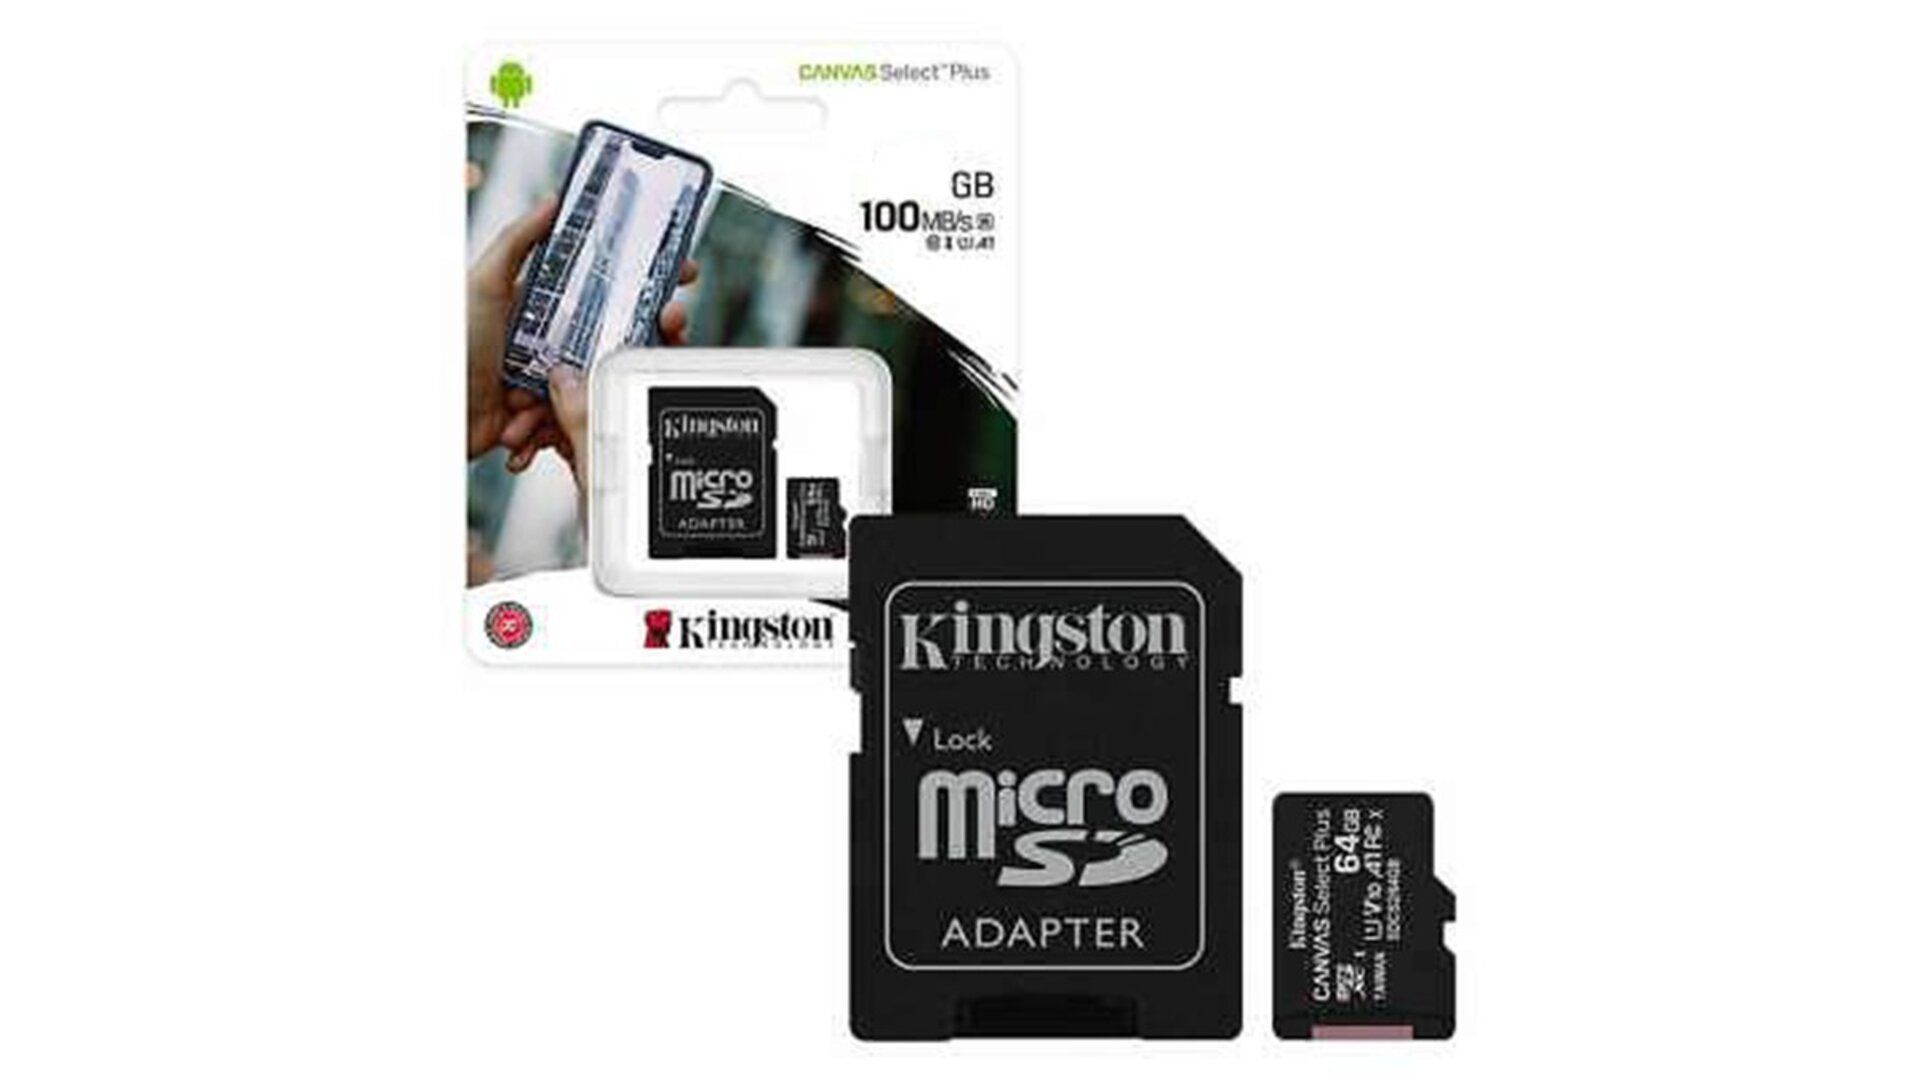 Kingston 8GB microSDHC მეხსიერების ბარათი